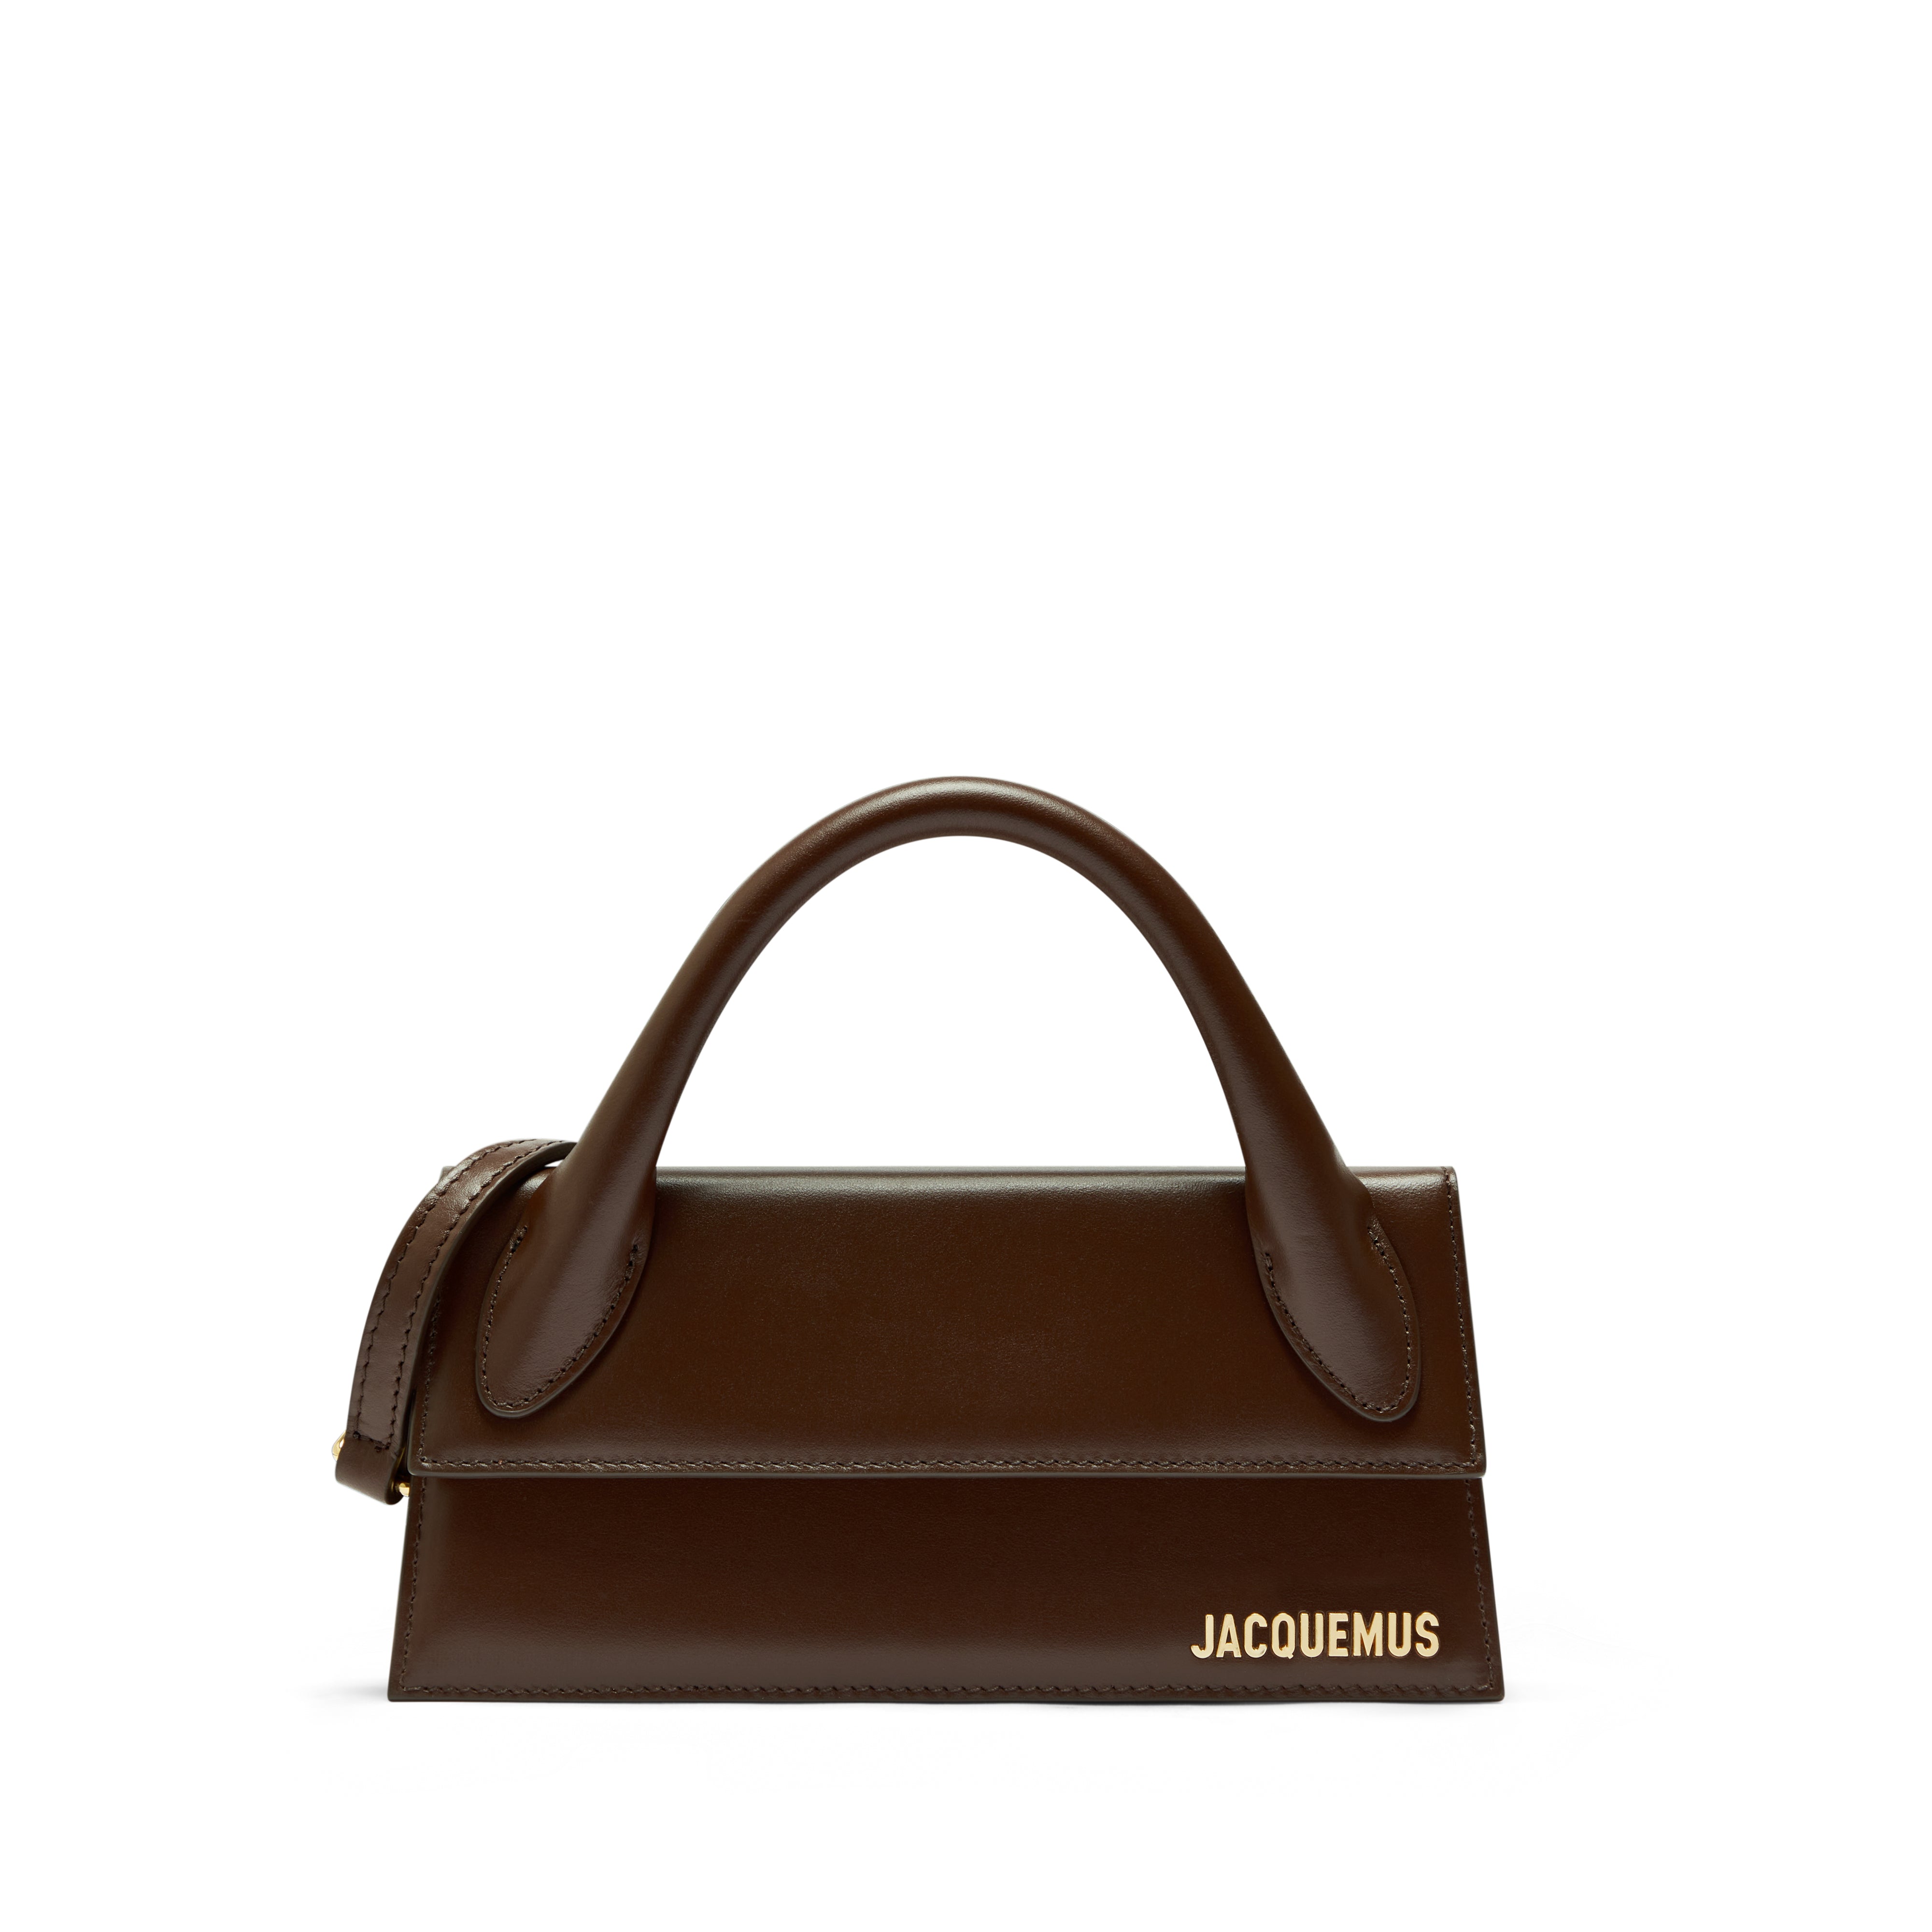 Jacquemus Women's Le Chiquito Long Top Handle Bag